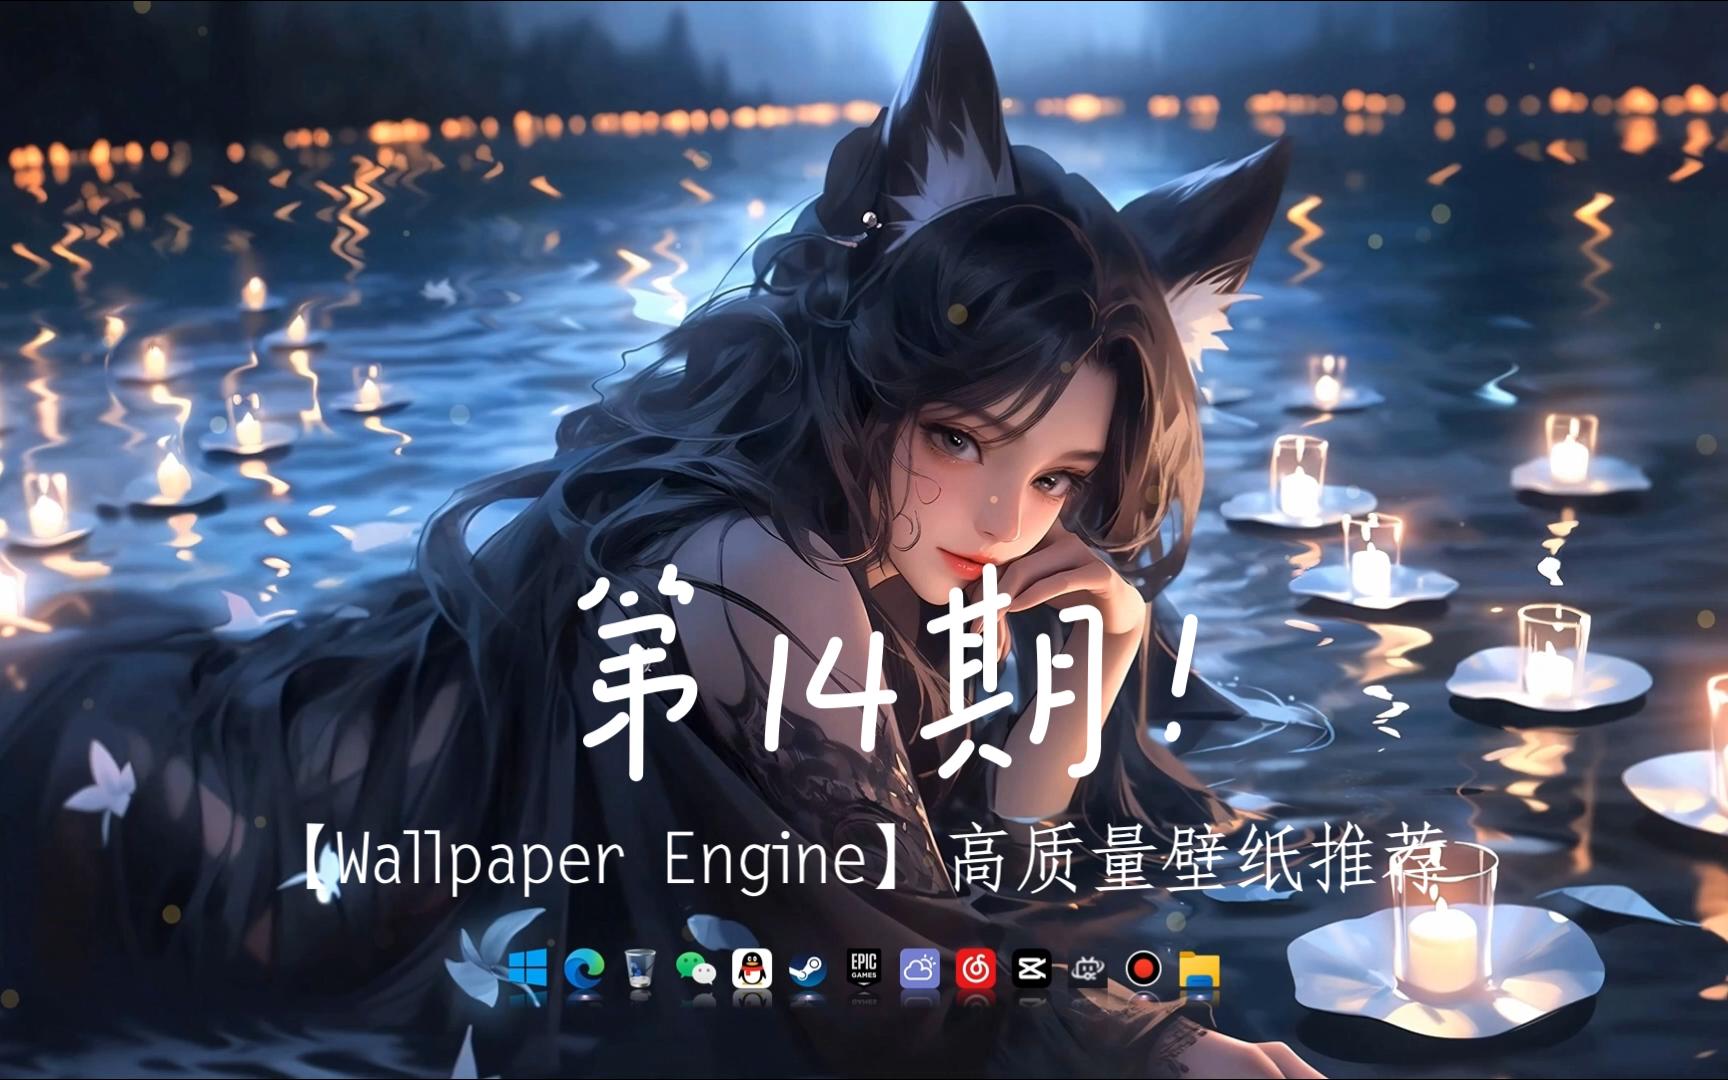 【Wallpaper Engine】高质量壁纸推荐 第14期！